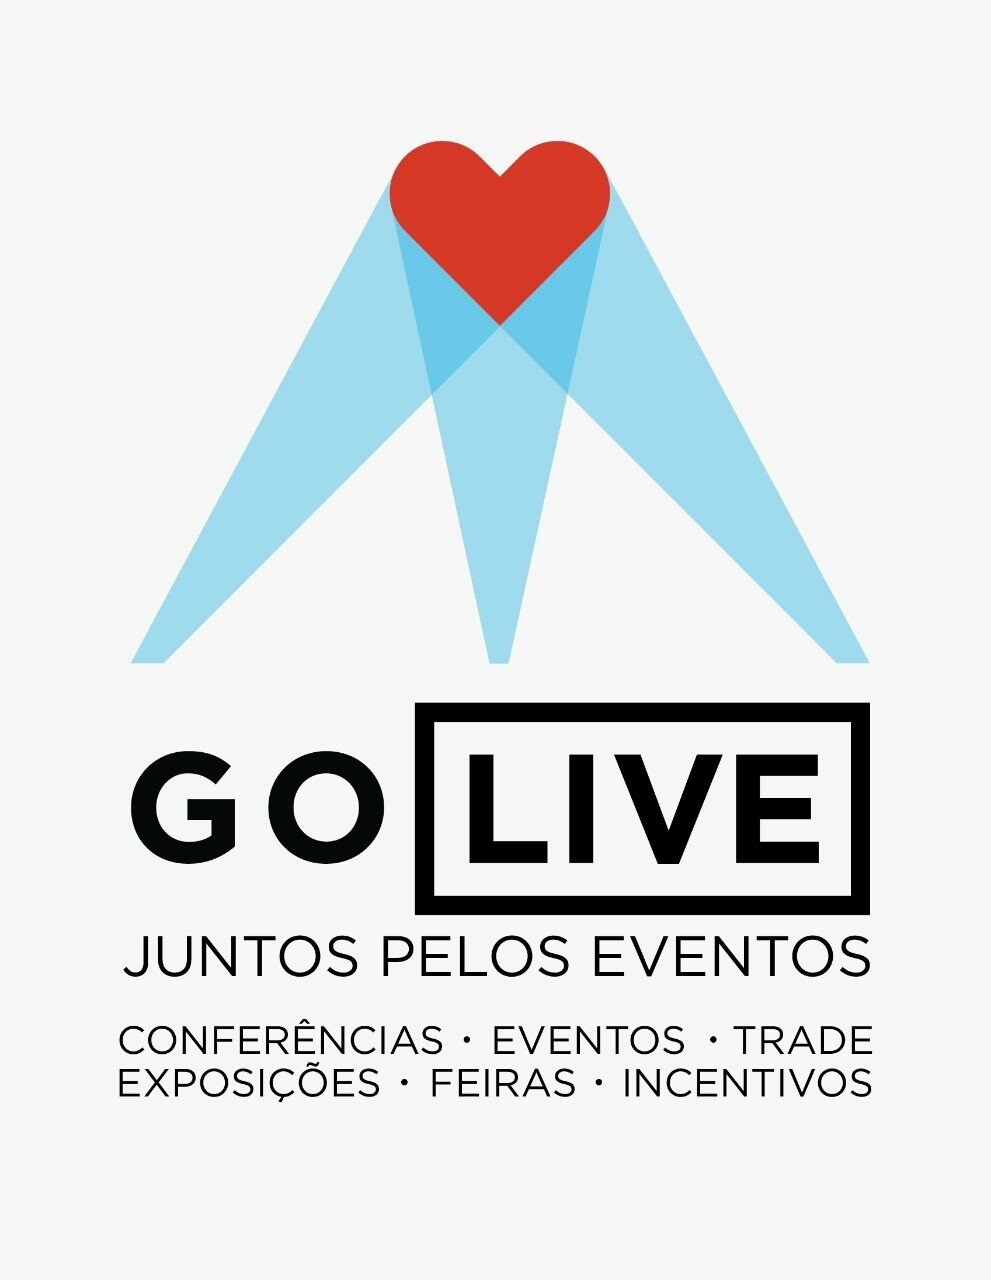 Go Live é formada por onze entidades brasileiras